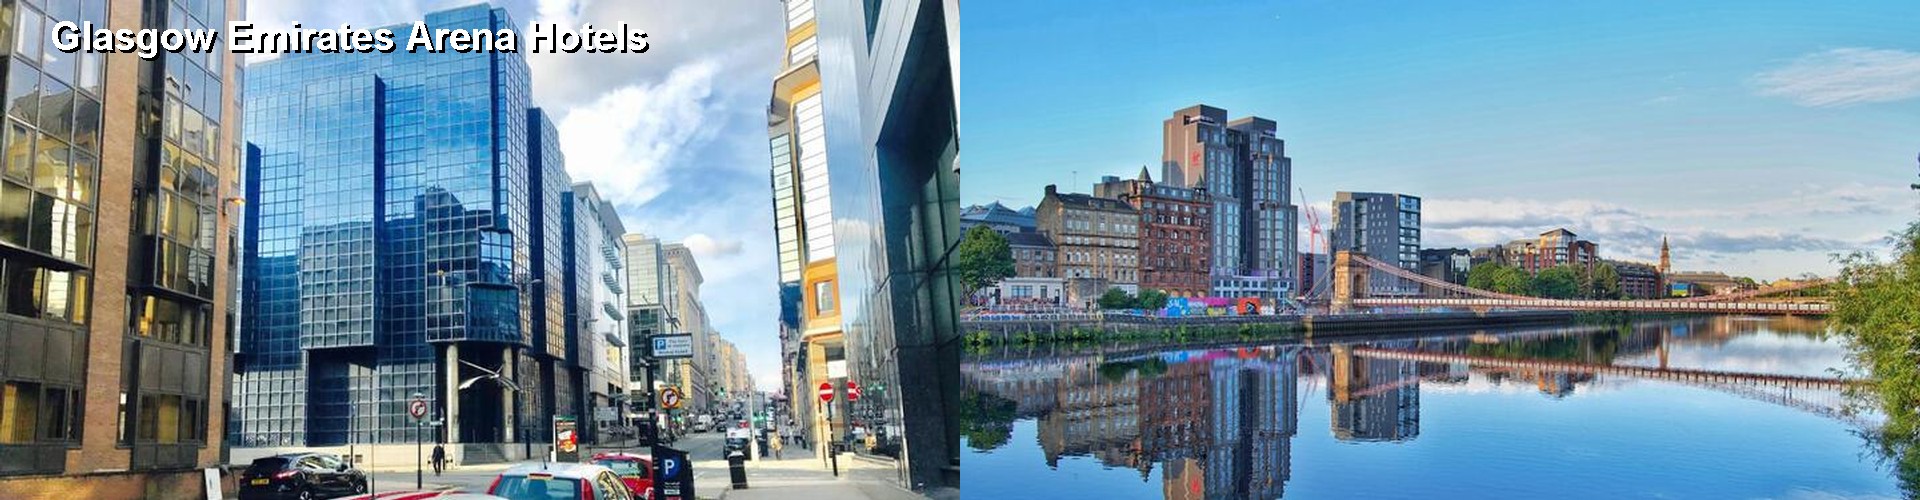 4 Best Hotels near Glasgow Emirates Arena